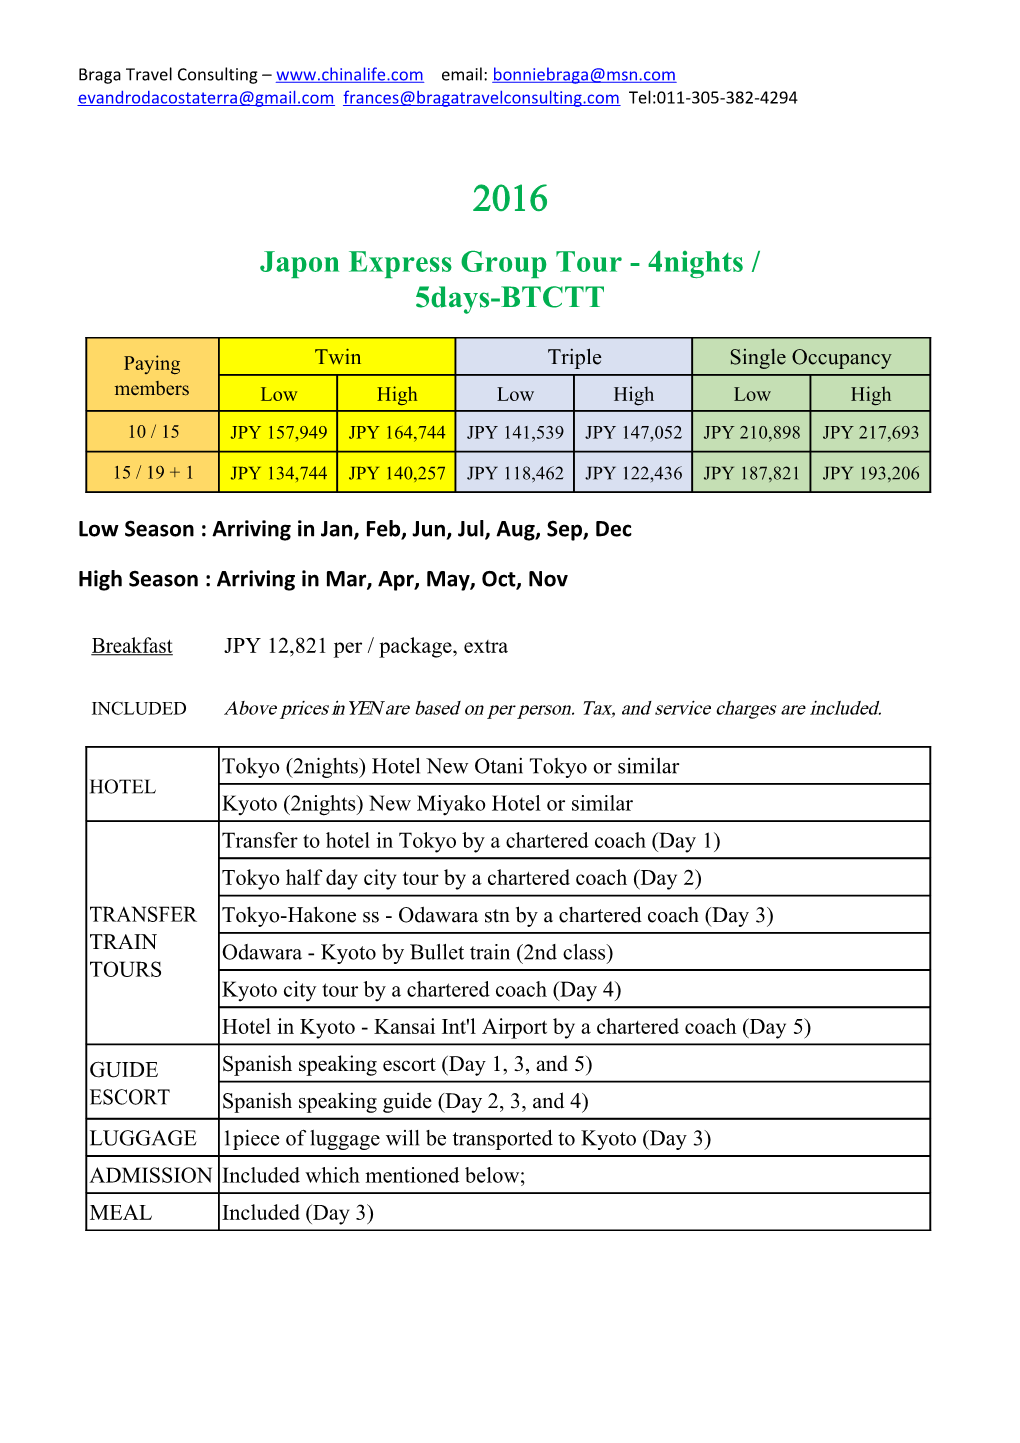 Japon Express Group Tour - 4Nights /5Days-BTCTT